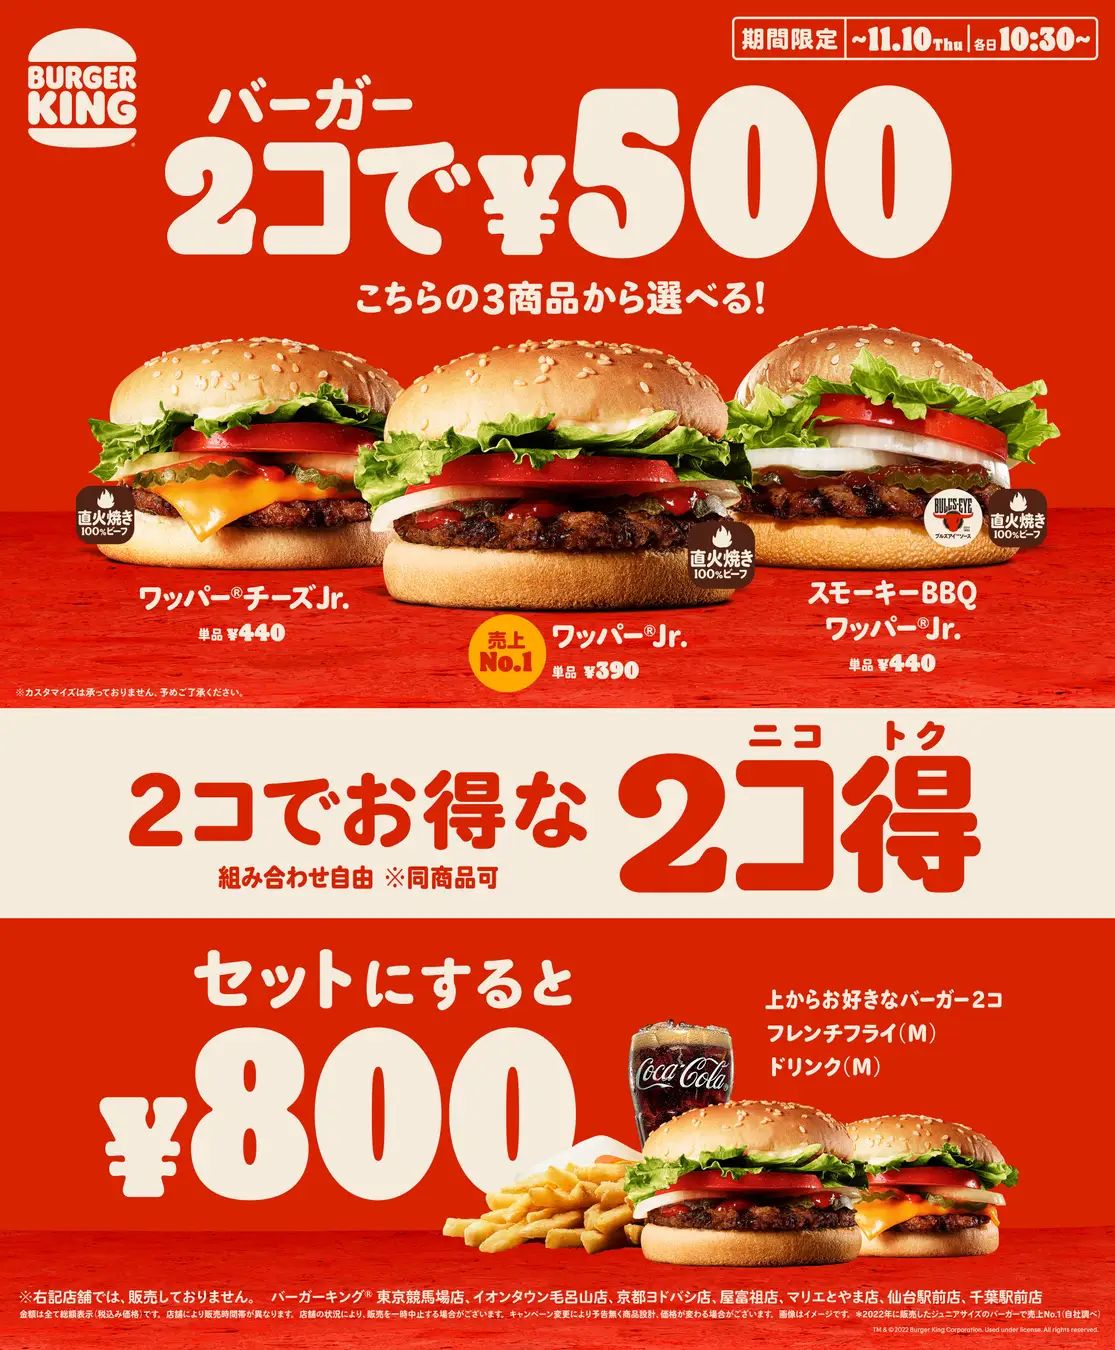 バーガーキング 2個500円「2コ得(ニコトク)」キャンペーン